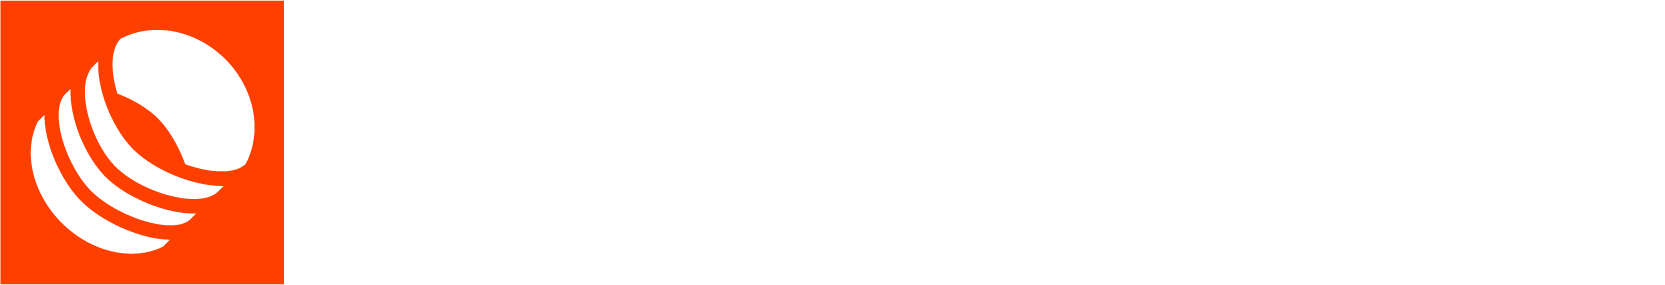 Spiroduct logo